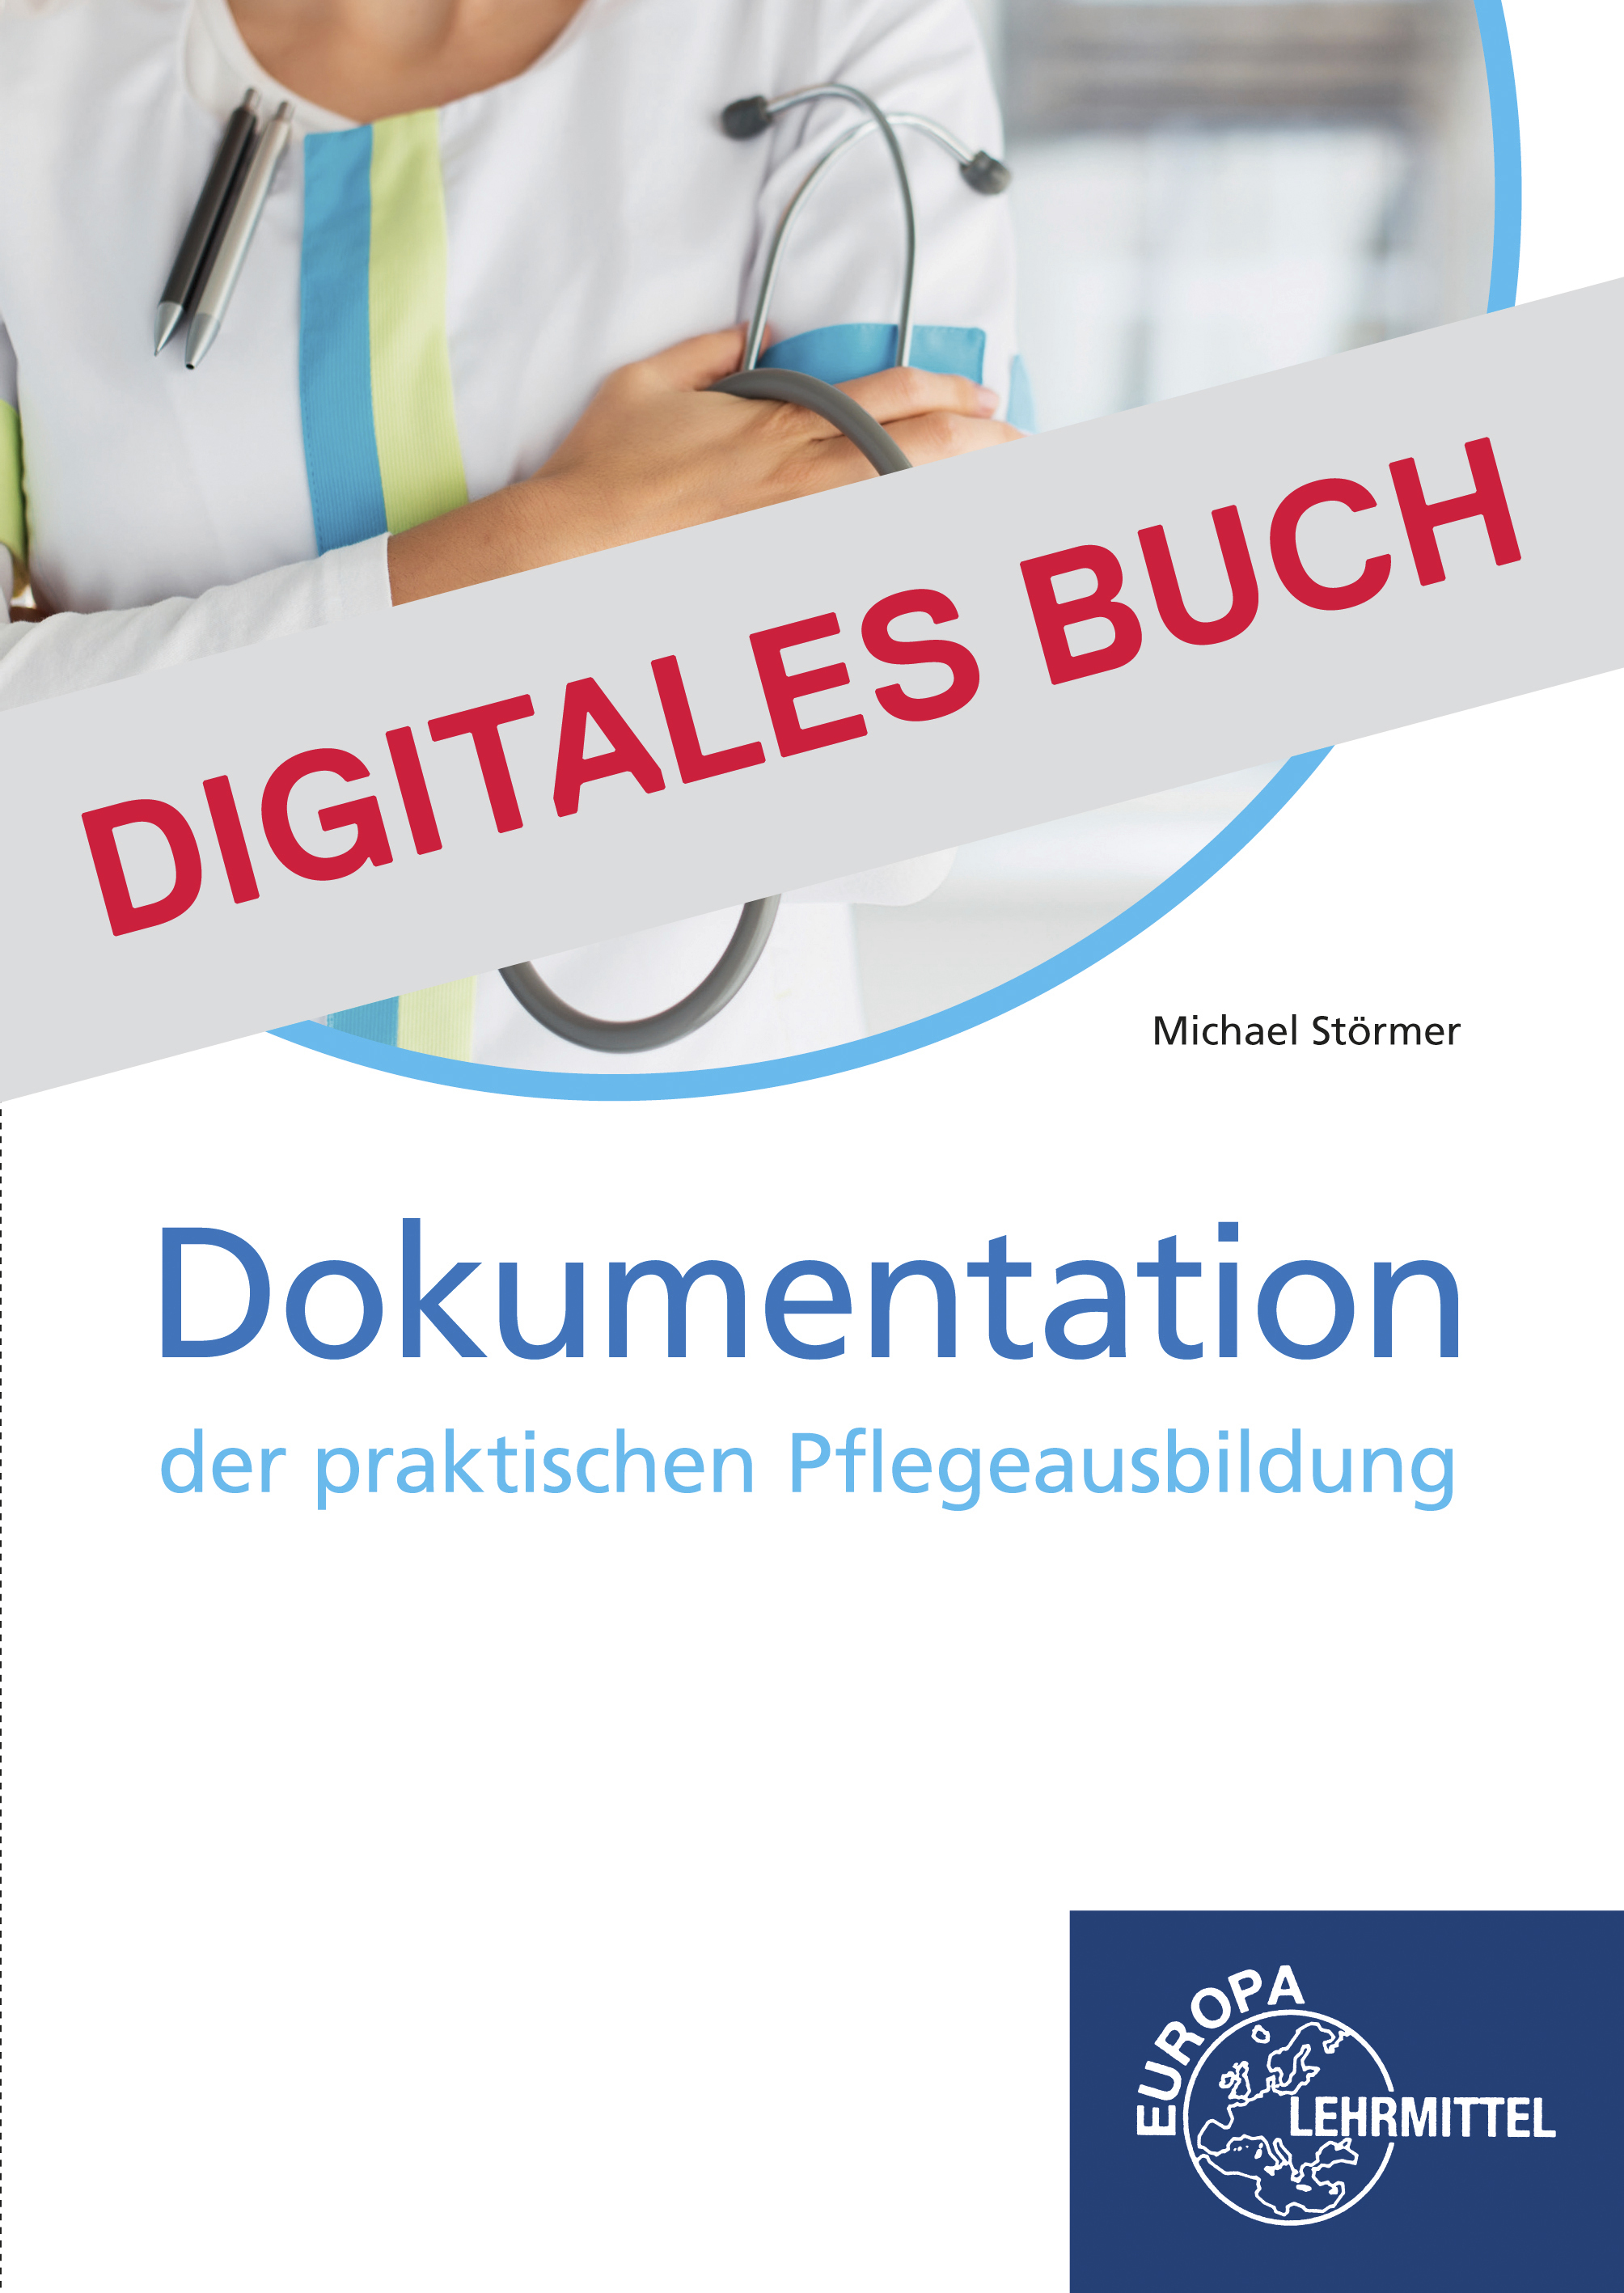 Dokumentation der praktischen Pflegeausbildung - Digitales Buch